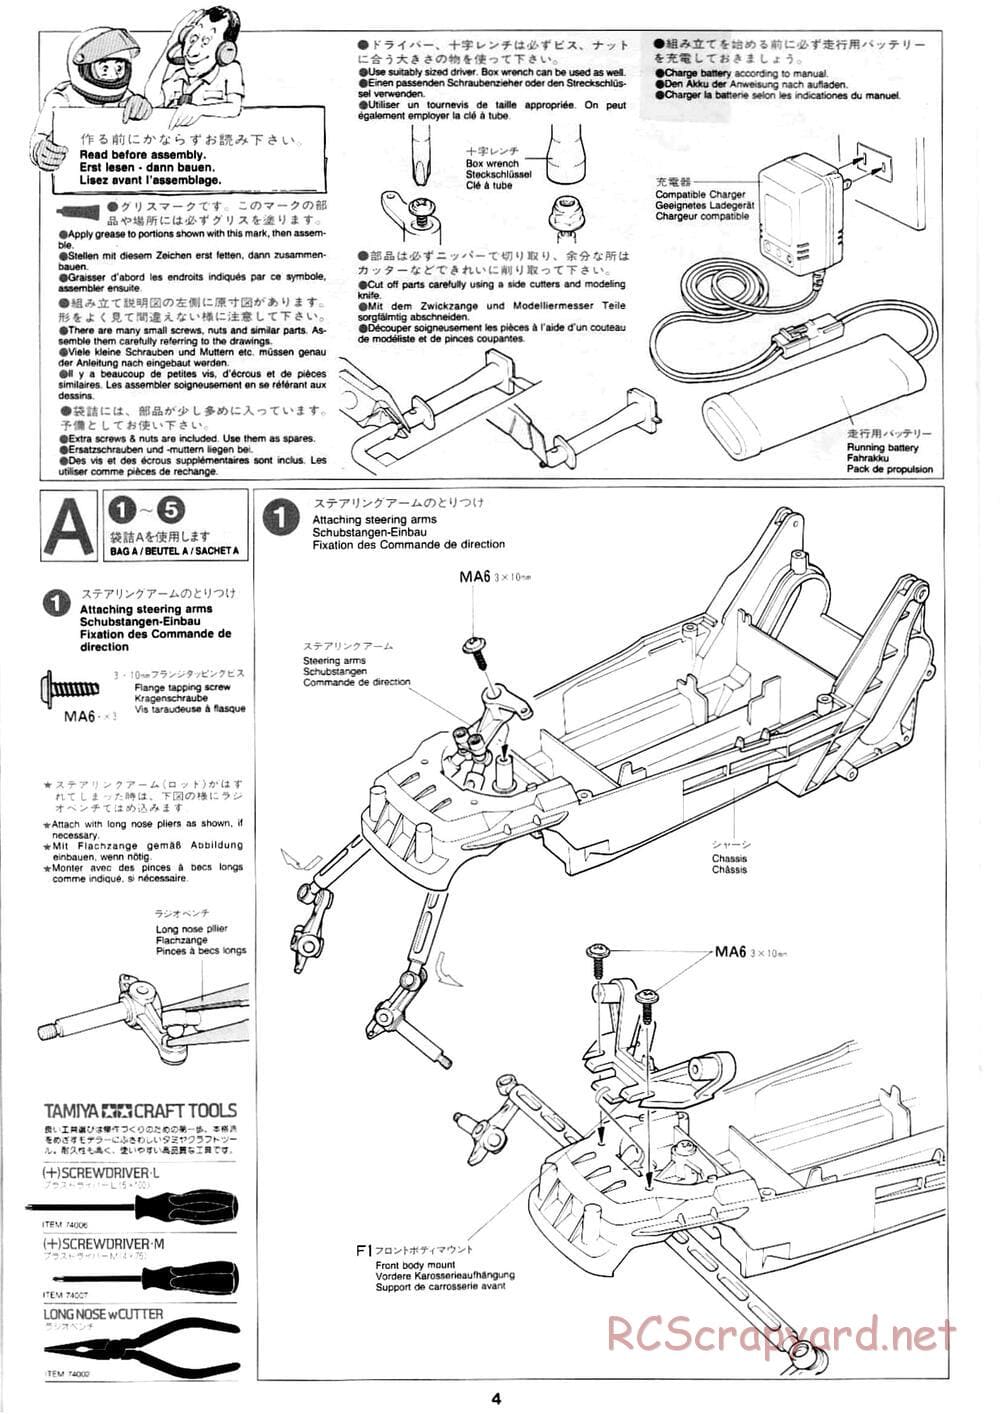 Tamiya - Mad Bull Chassis - Manual - Page 4